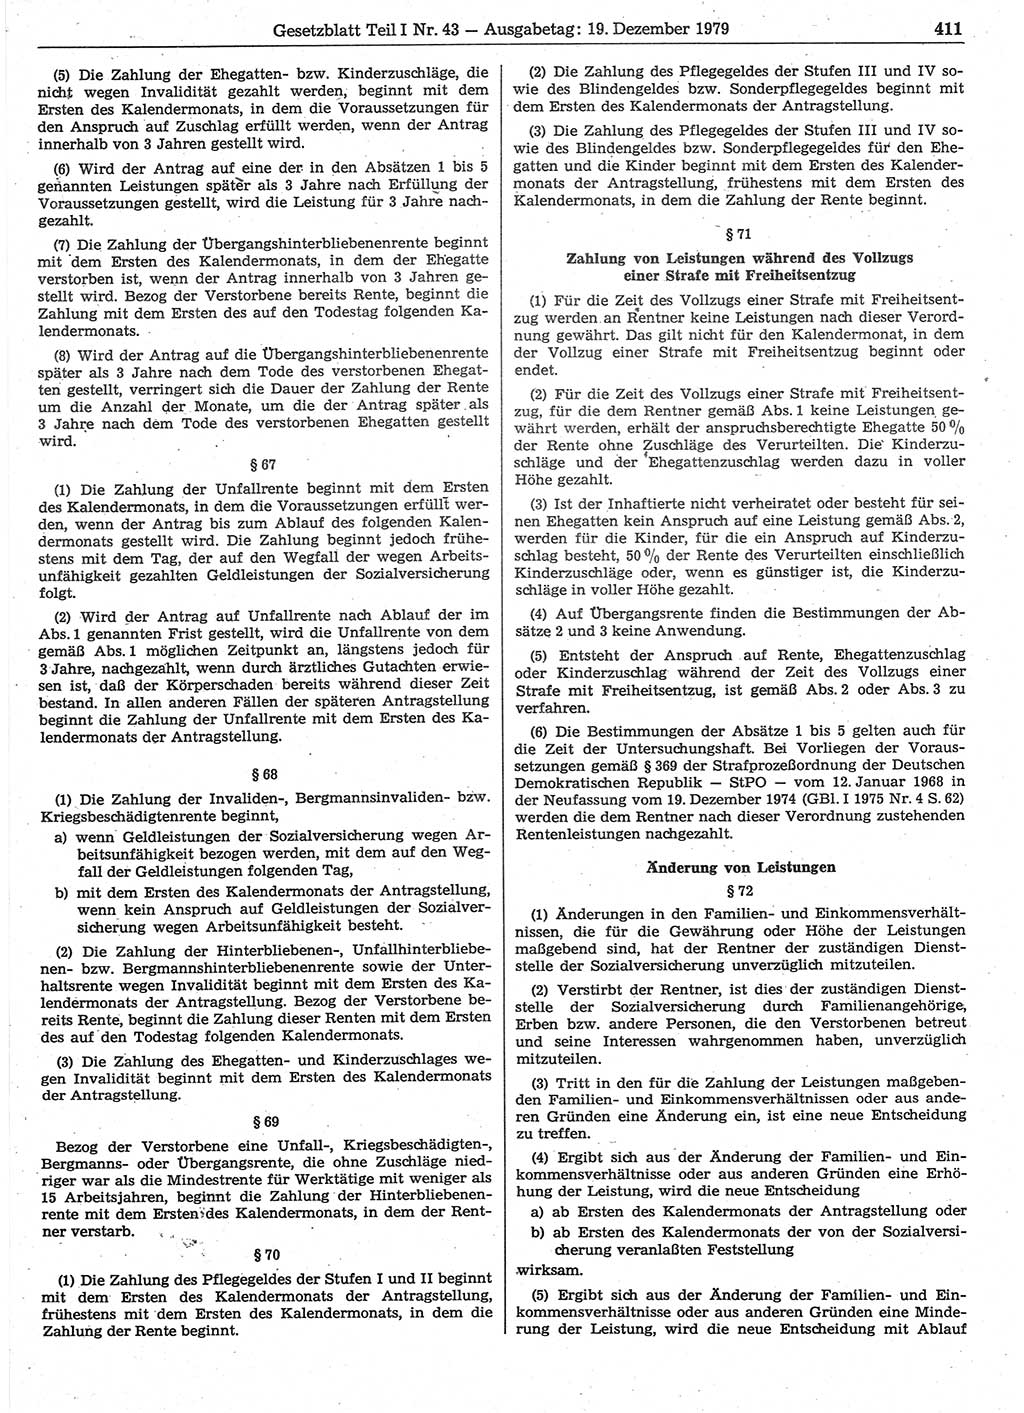 Gesetzblatt (GBl.) der Deutschen Demokratischen Republik (DDR) Teil Ⅰ 1979, Seite 411 (GBl. DDR Ⅰ 1979, S. 411)